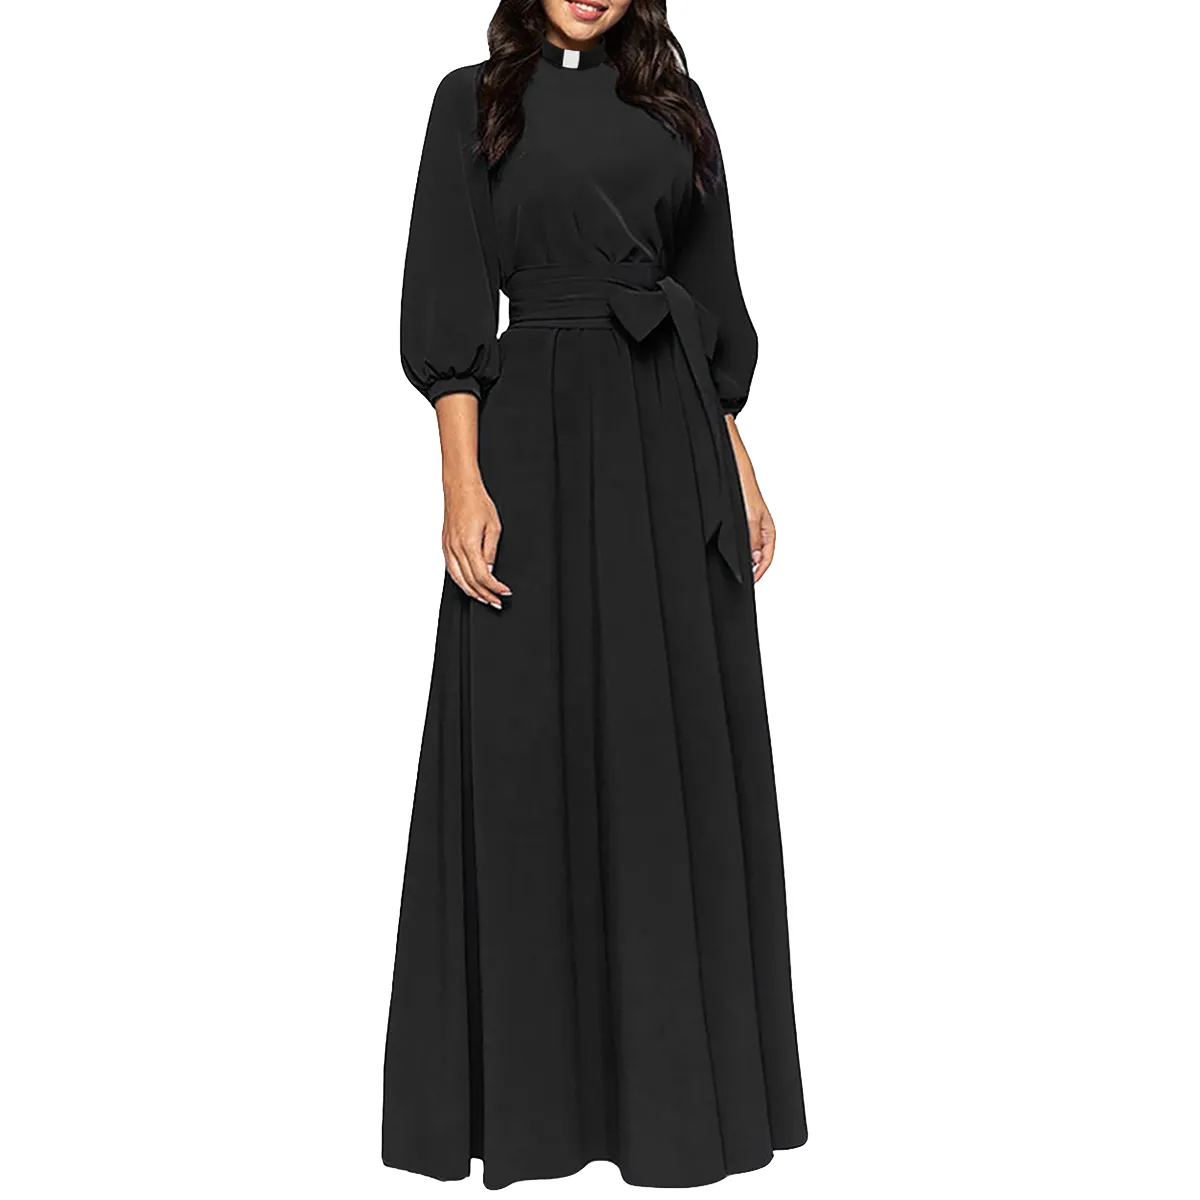 Kirchenkleid für Frauen Bleistift Bodycon Maxi Kleid elegante Priester -Geistliche Kleider mit Tab -Einsatzkragen